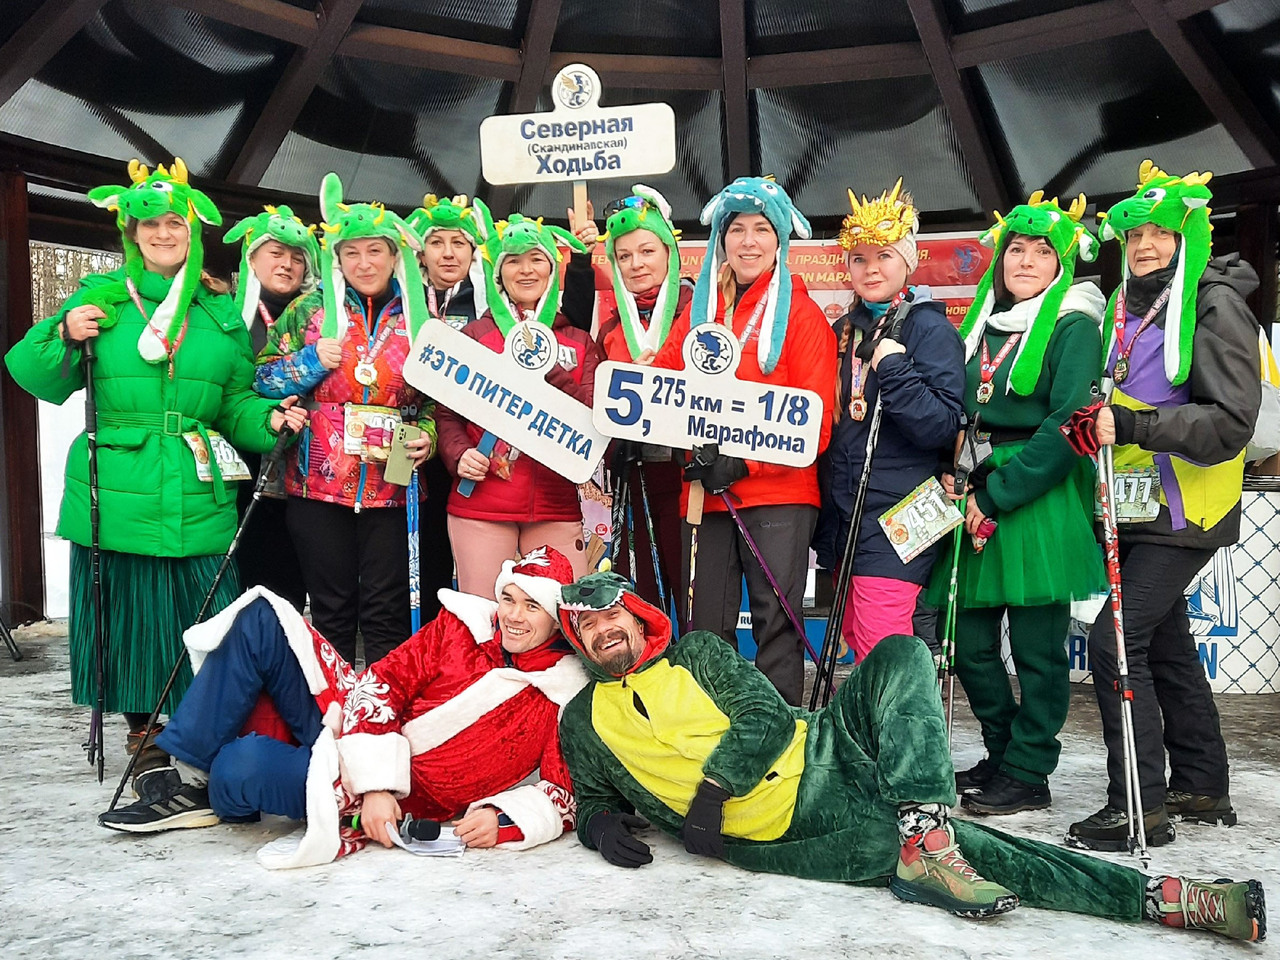 Североходцы из Кировска испытали себя на зимнем марафоне в Петербурге